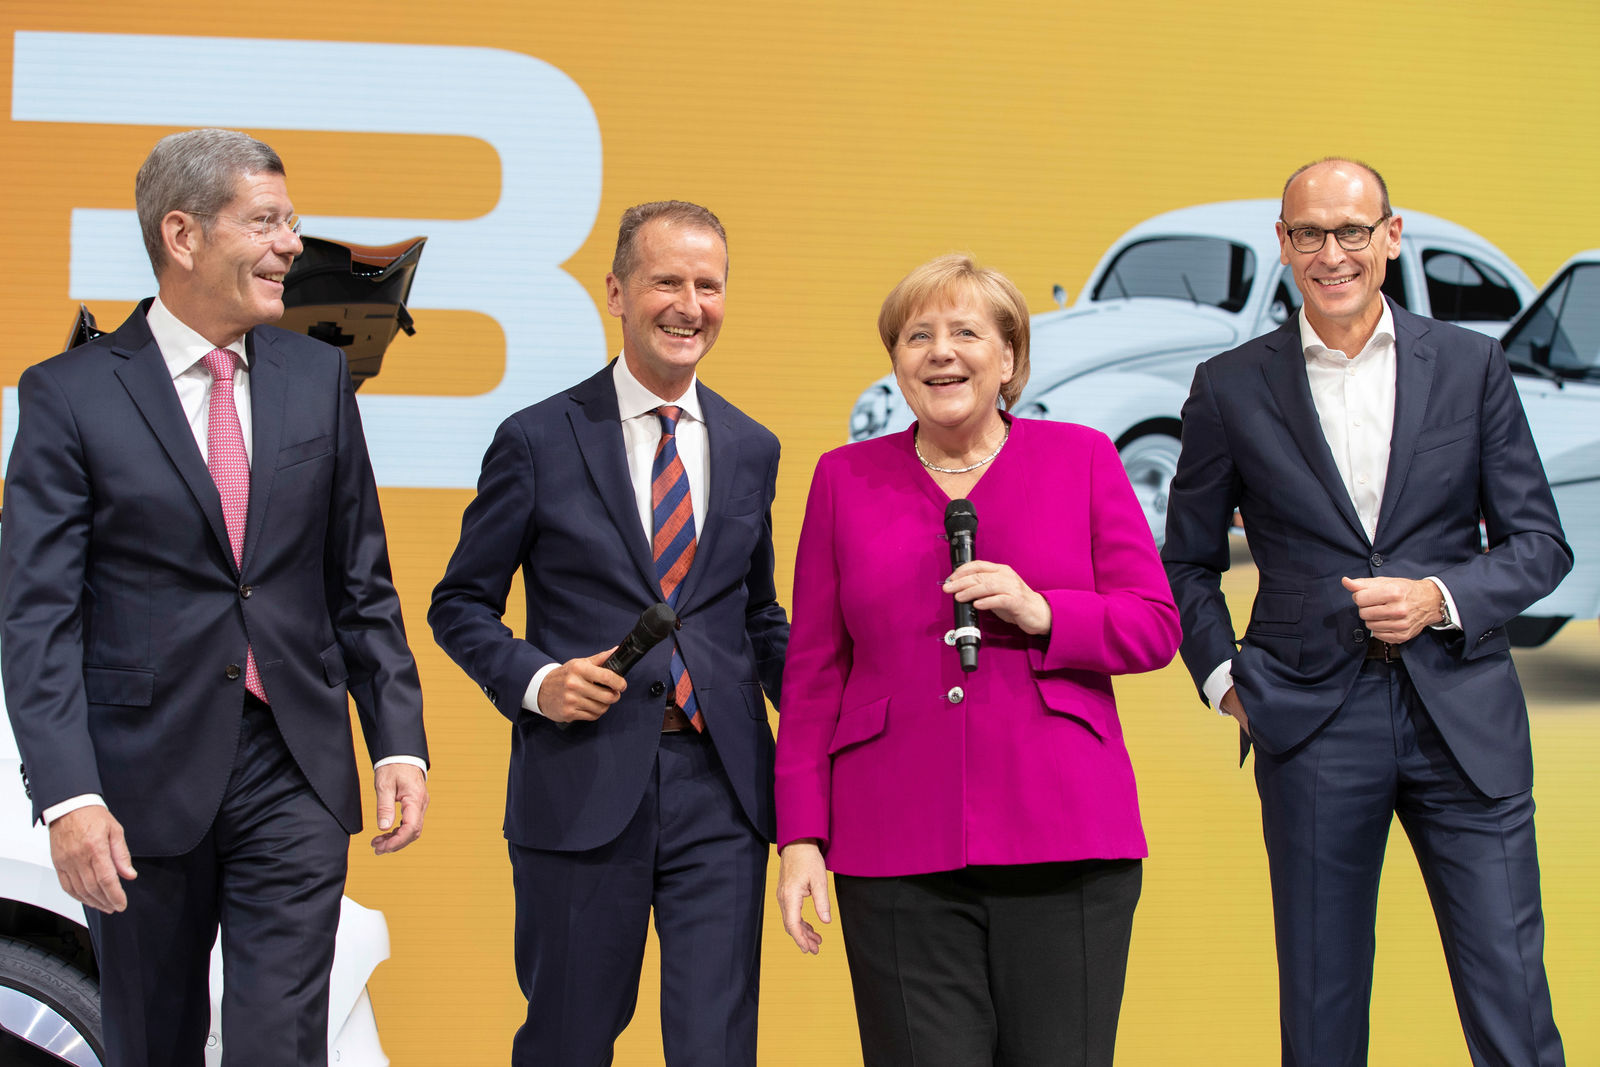 Chancellor Merkel visits Volkswagen at the IAA